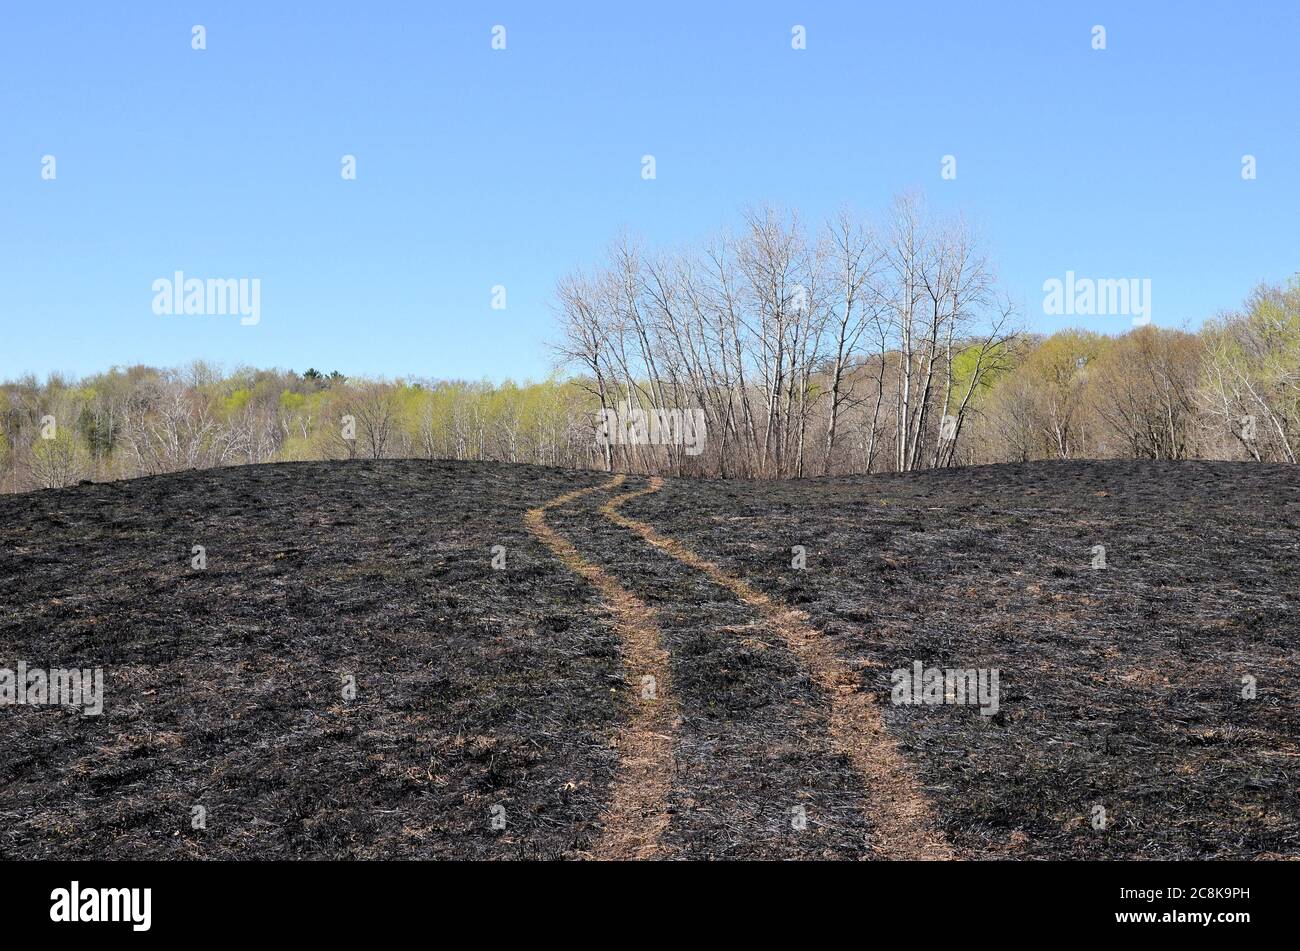 Reifenspuren durchqueren vom Feuer geschwärztes Grasland und winden sich zu einer weit entfernten Baumreihe. Stockfoto